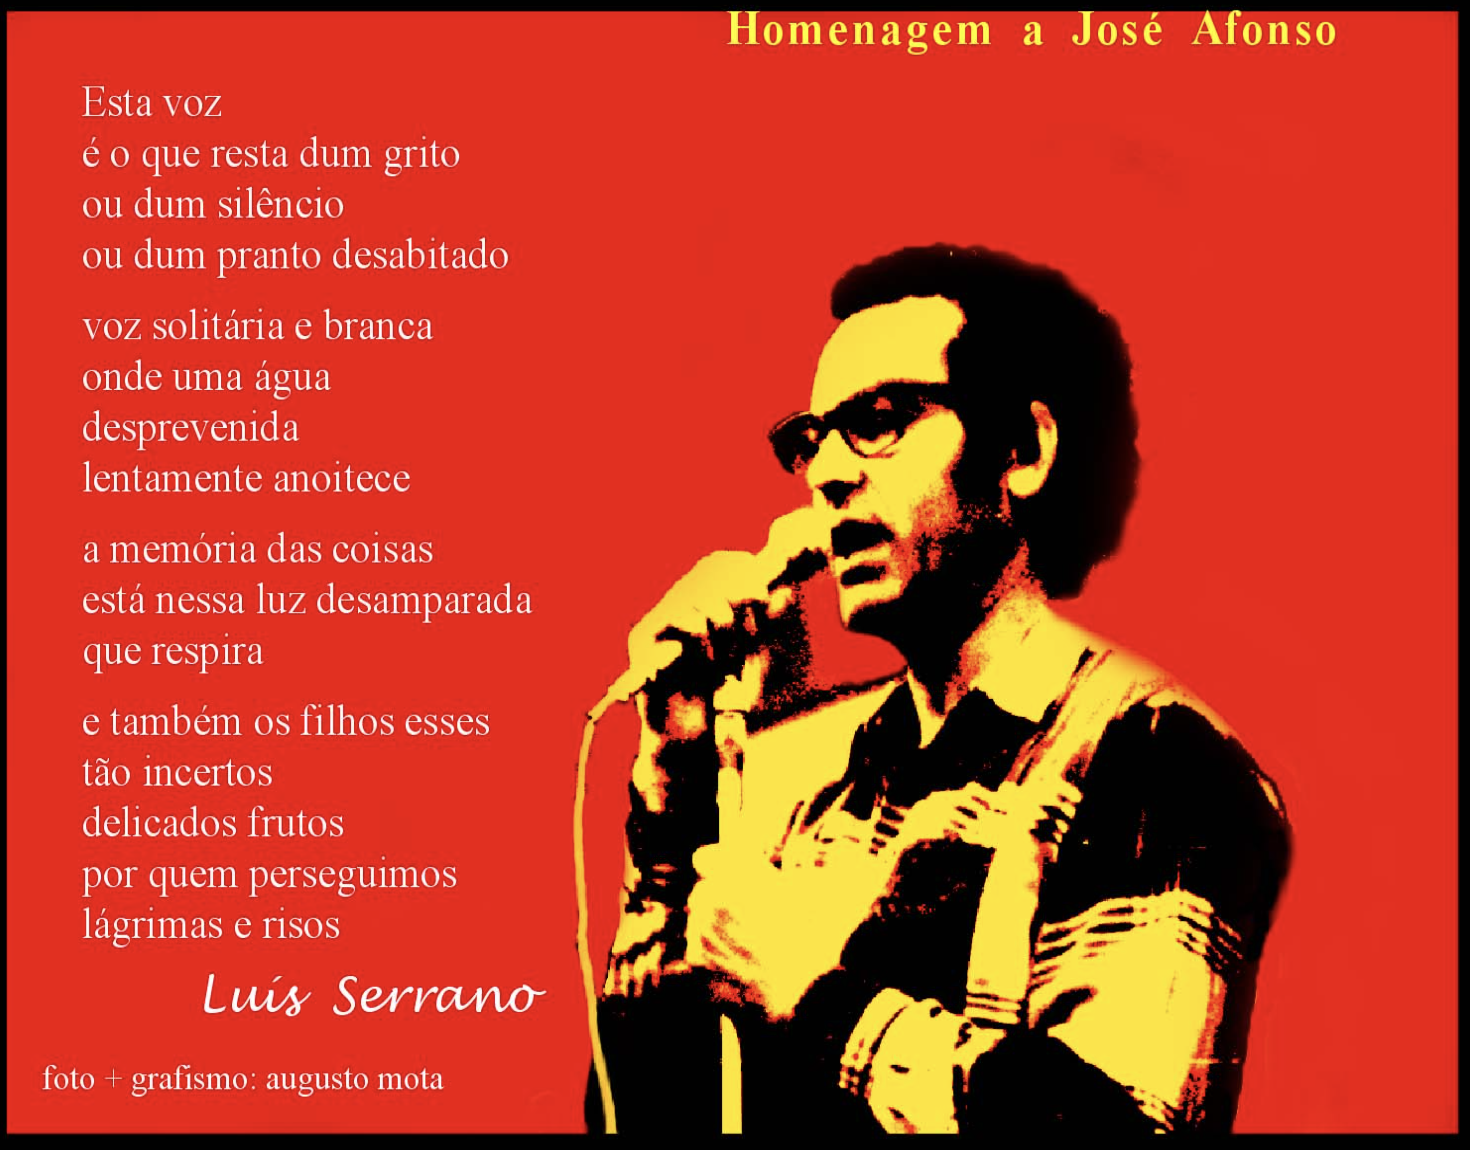 Homenagem a Zeca Afonso - poema / cartaz